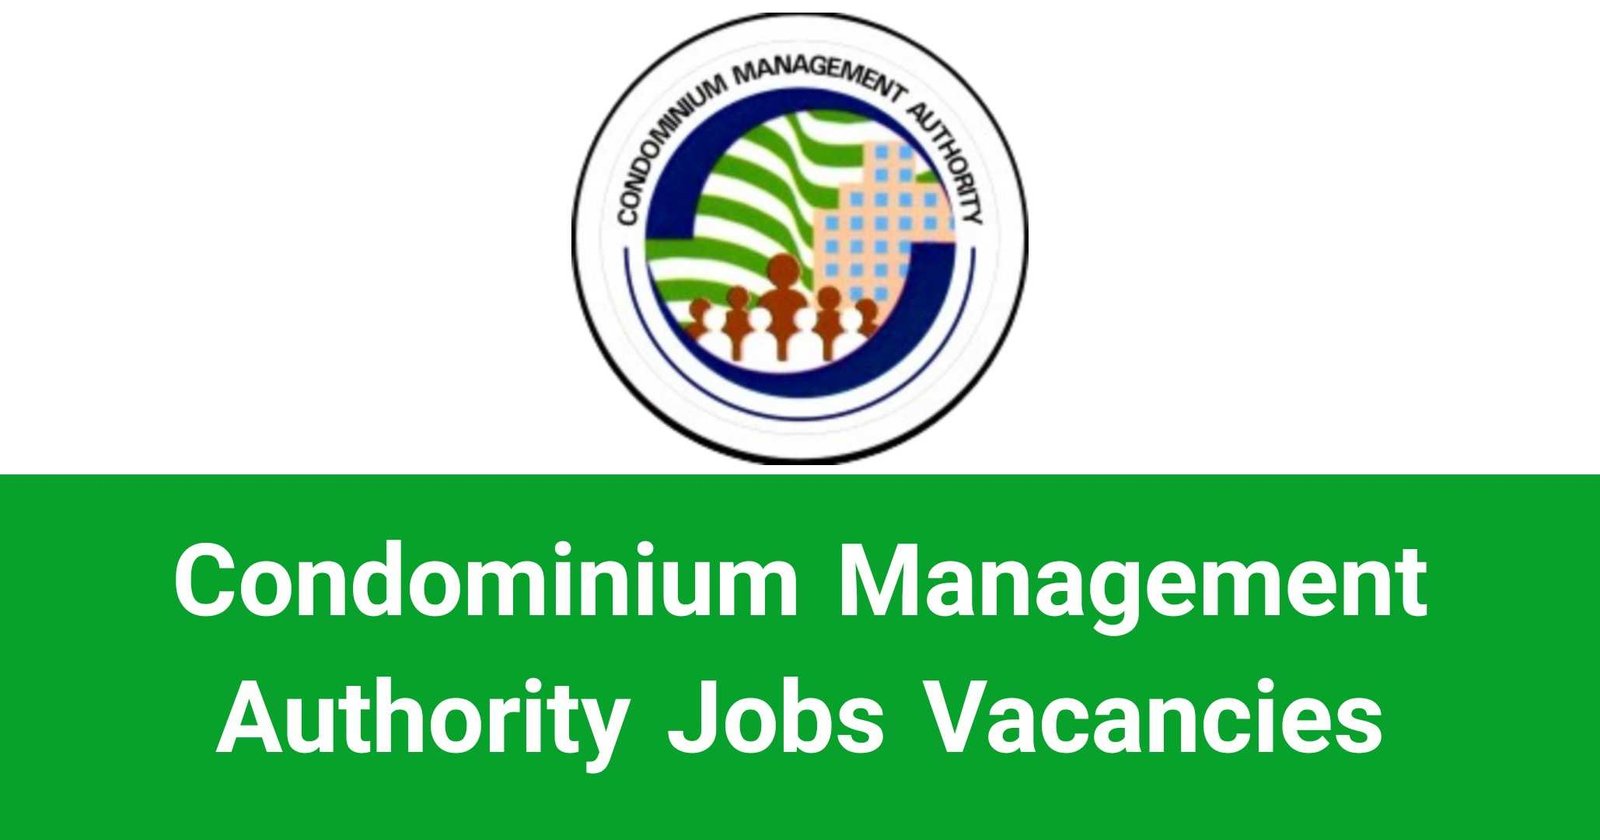 Condominium Management Authority Jobs Vacancies Recruitments